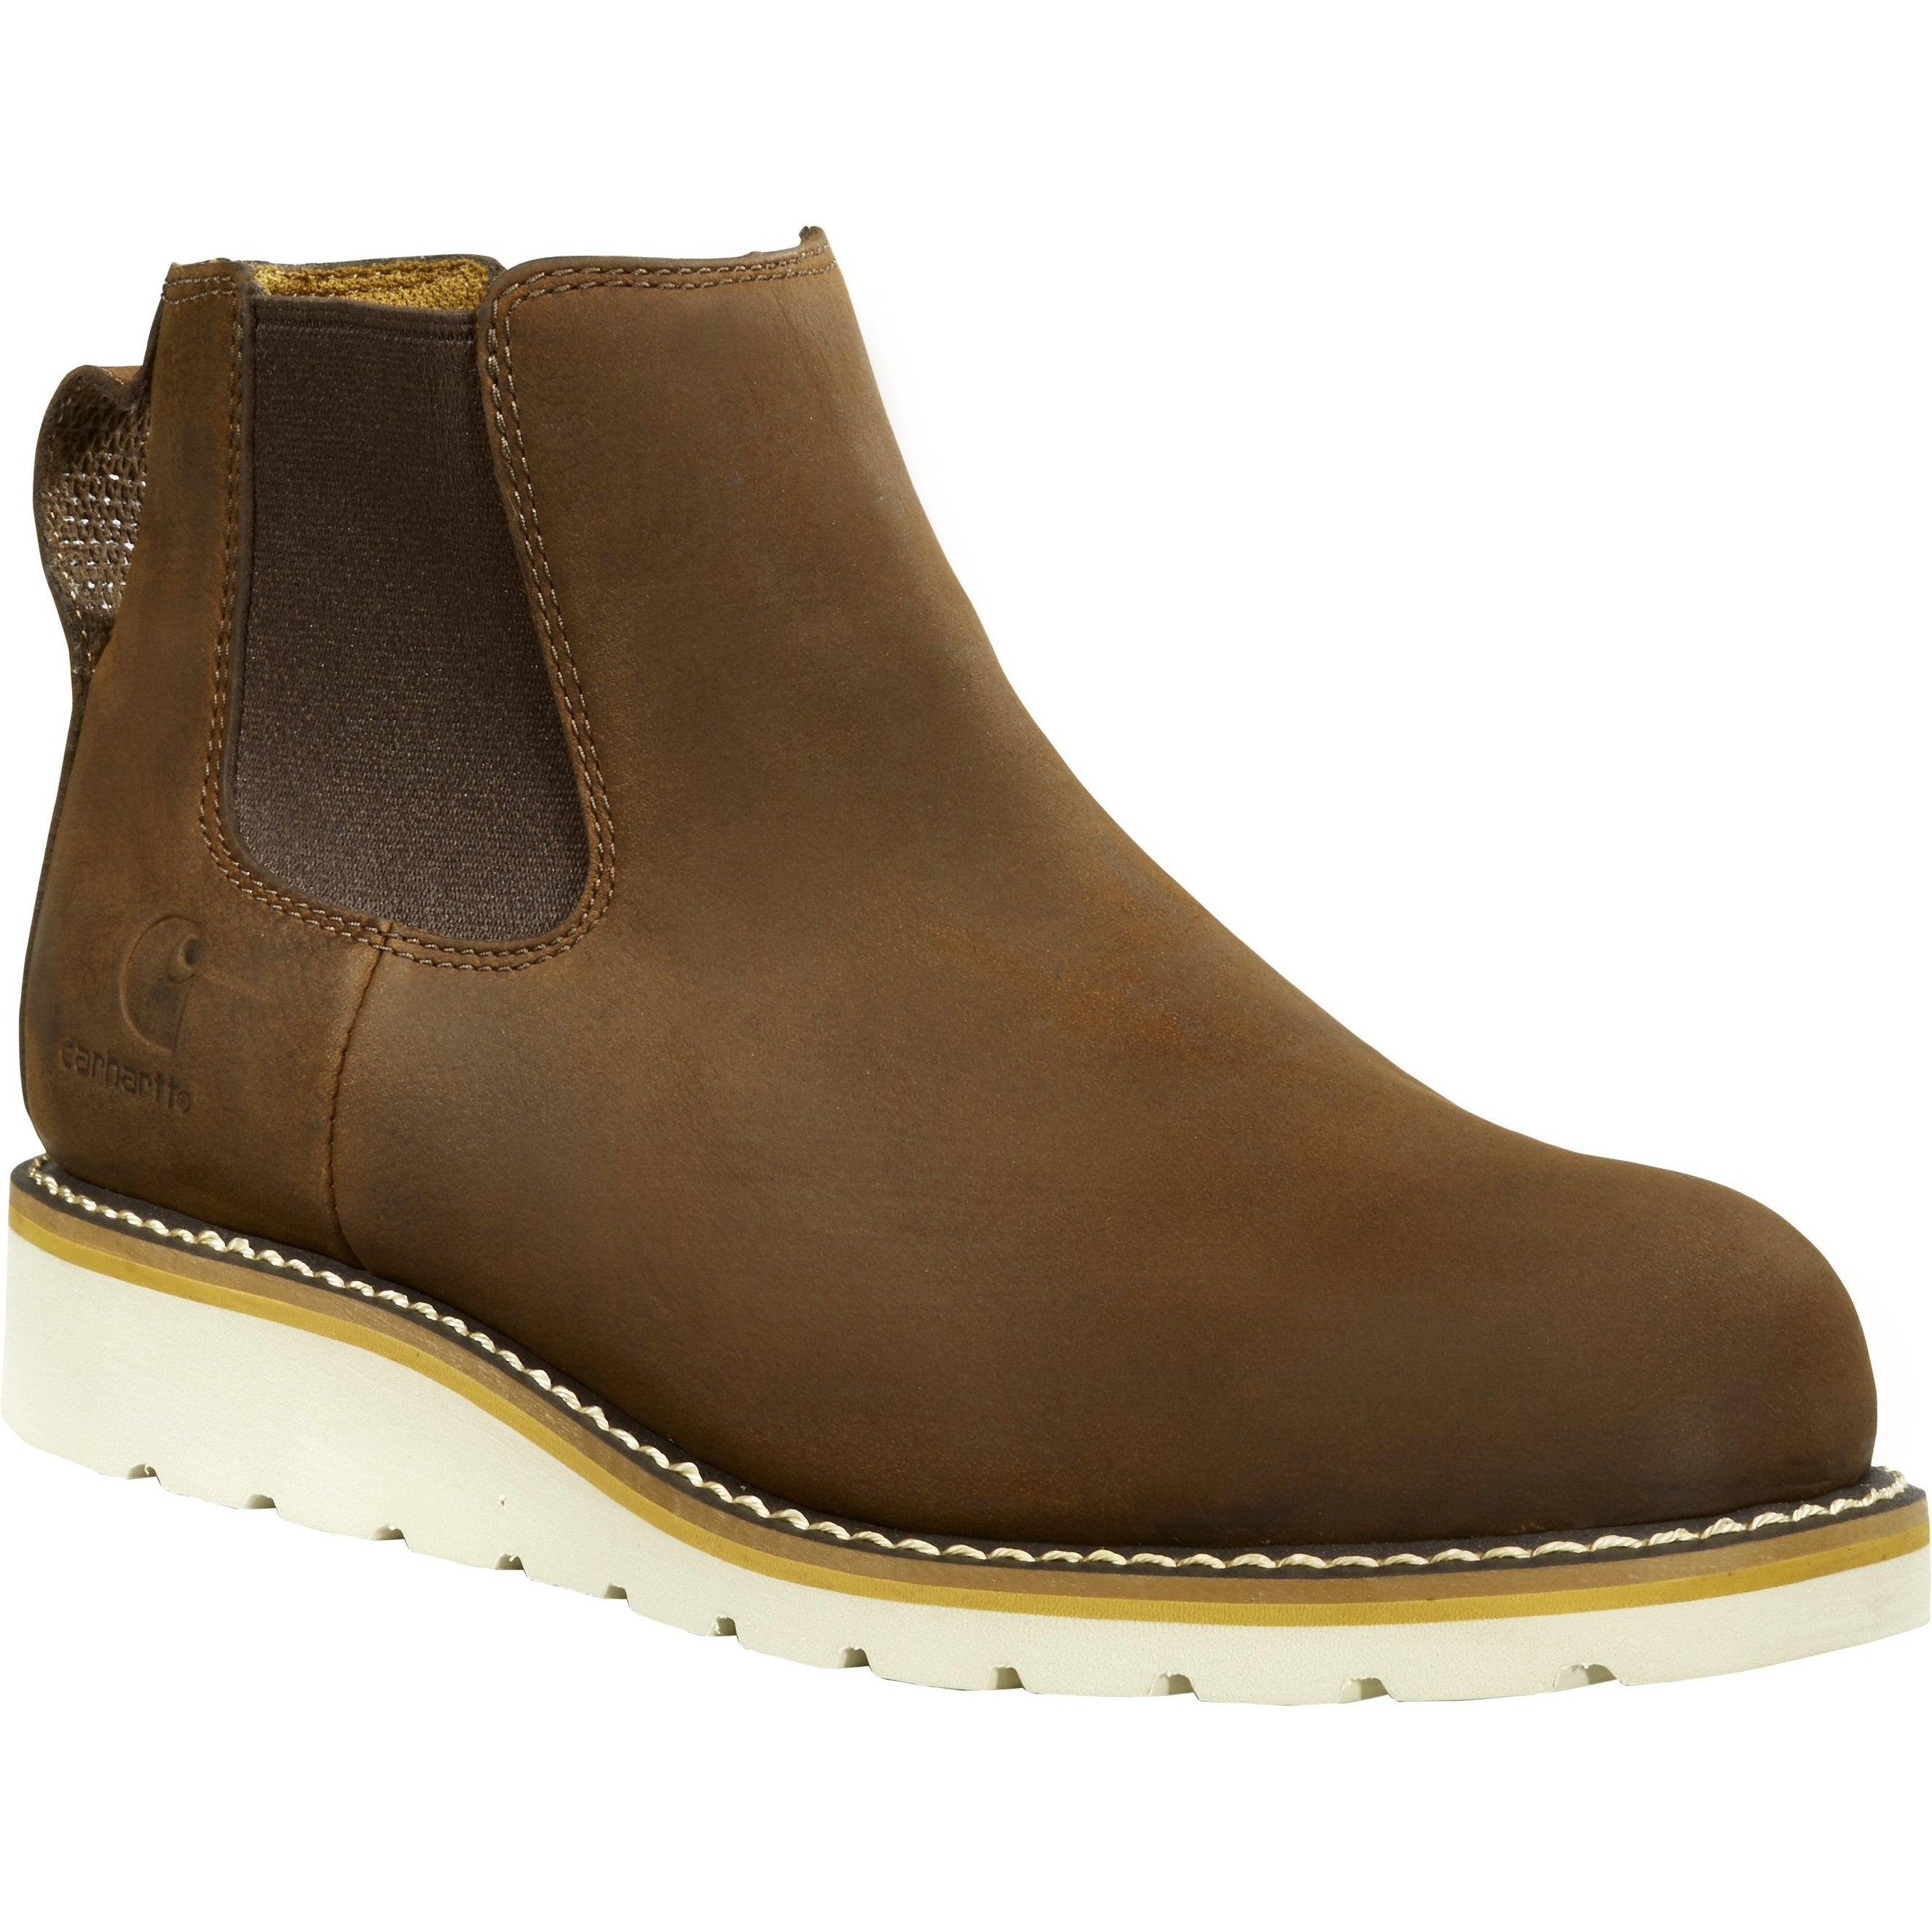 Carhartt Men's Chelsea 5" Steel Toe Wedge Work Boot - Brown - FW5233-M 8 / Medium / Brown - Overlook Boots